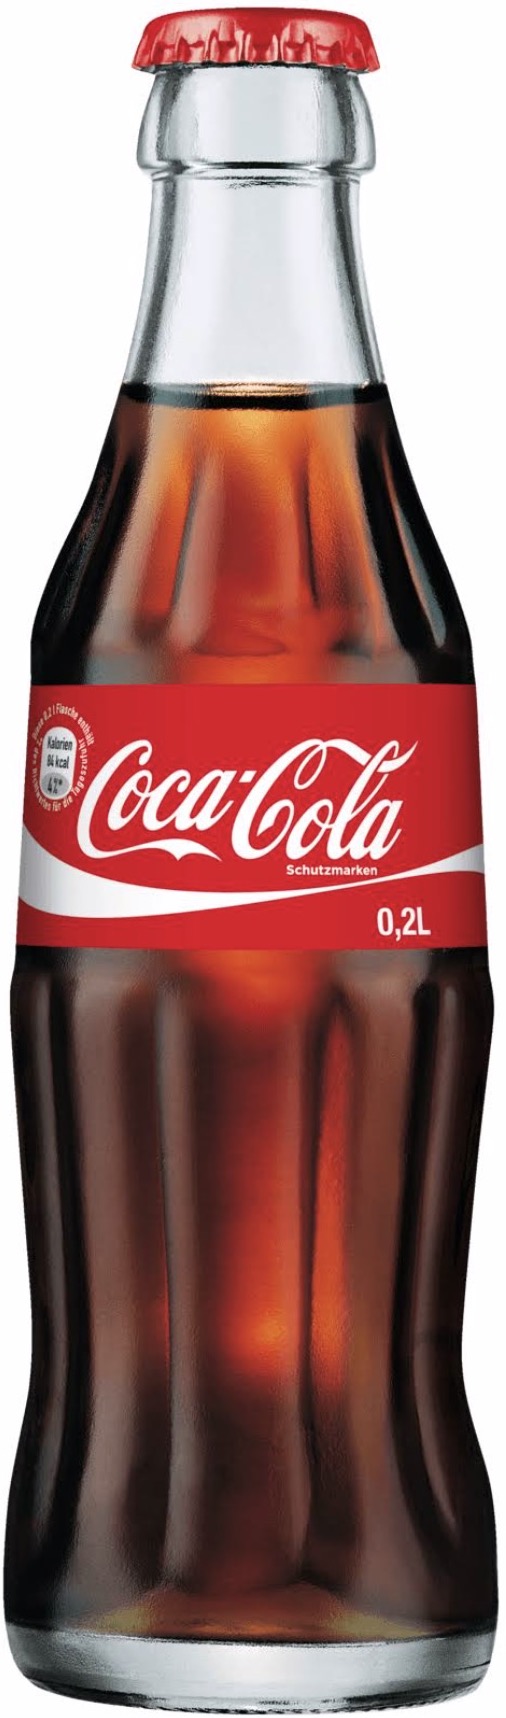 Coca Cola 0,2L MEHRWEG